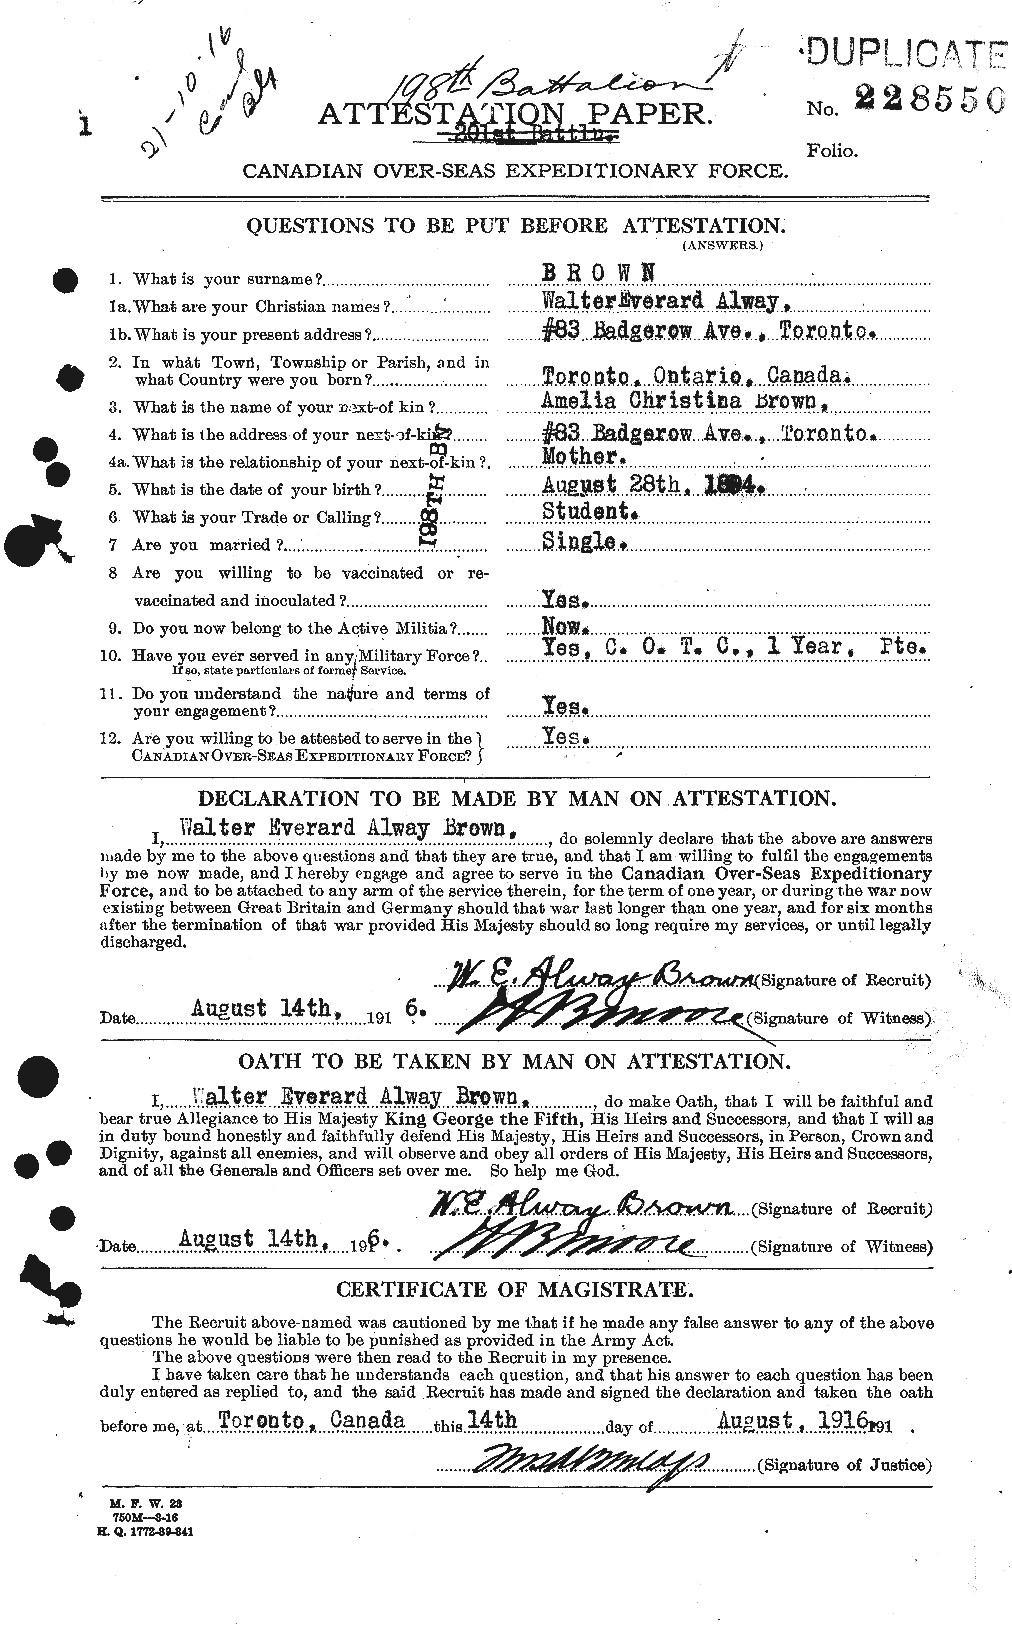 Dossiers du Personnel de la Première Guerre mondiale - CEC 266663a